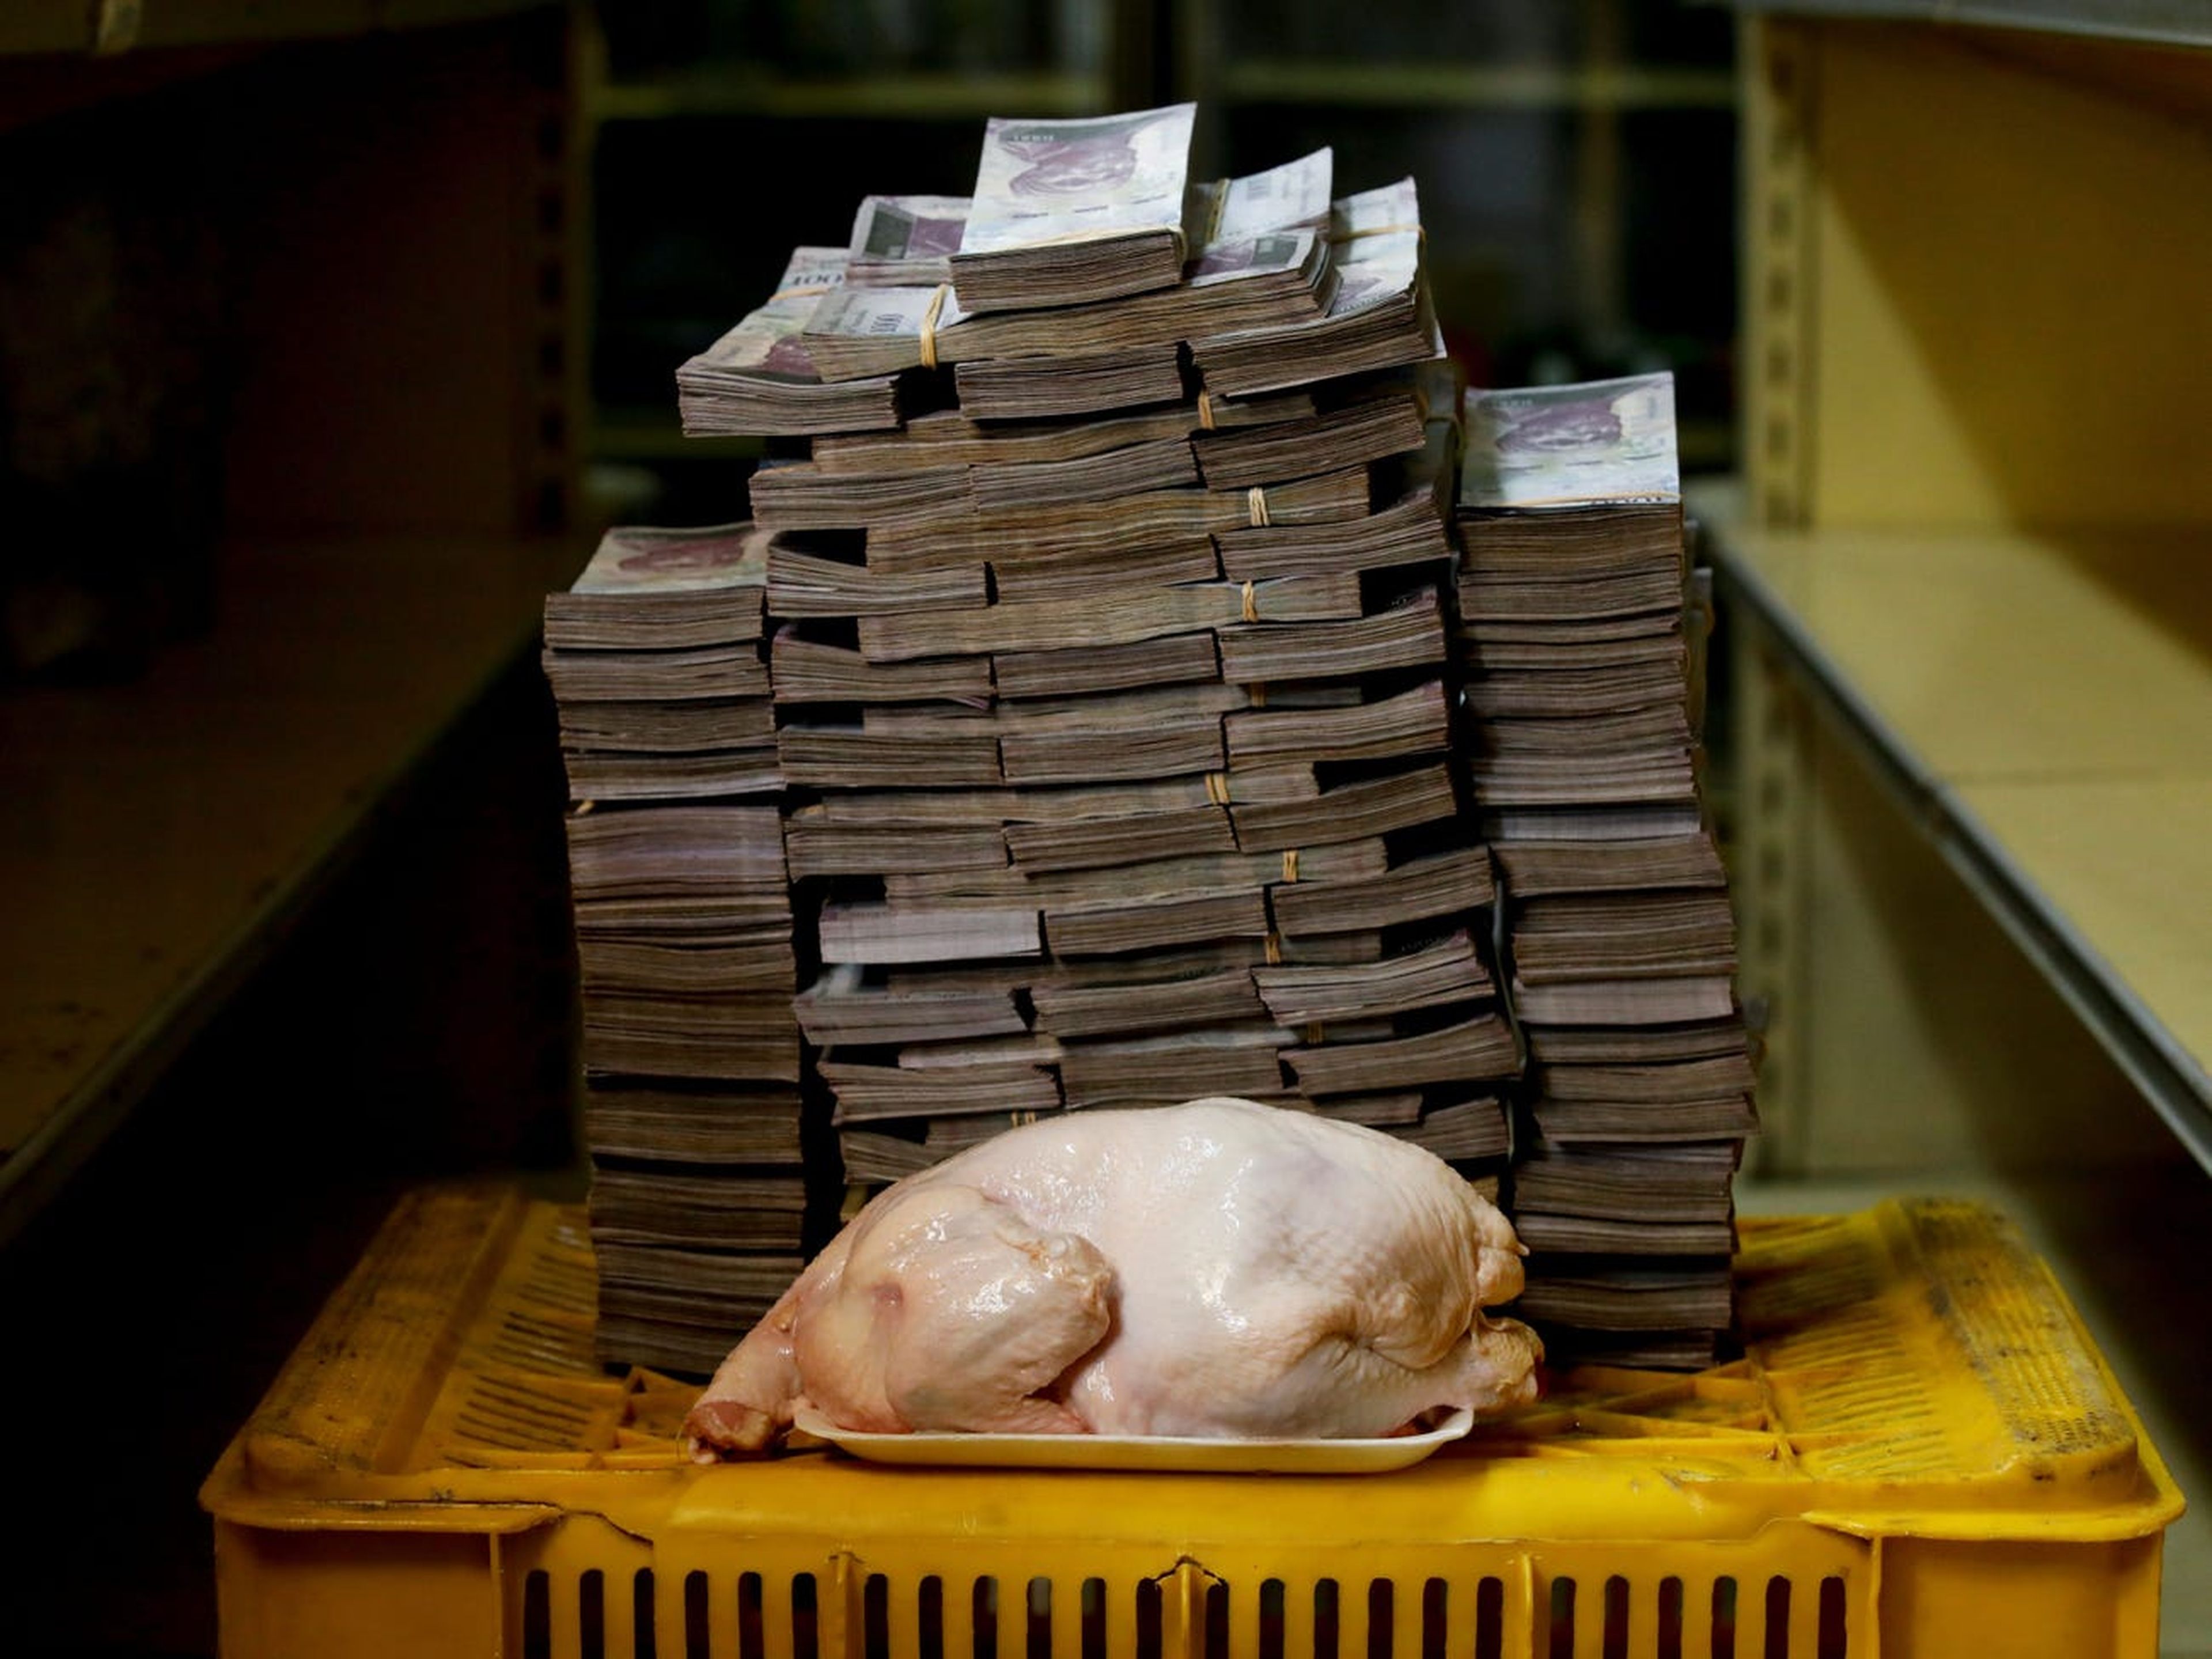 En 2018, un pollo de 2 kilos en Caracas costaba 14,6 millones de bolívares, el equivalente a 1,83 euros.